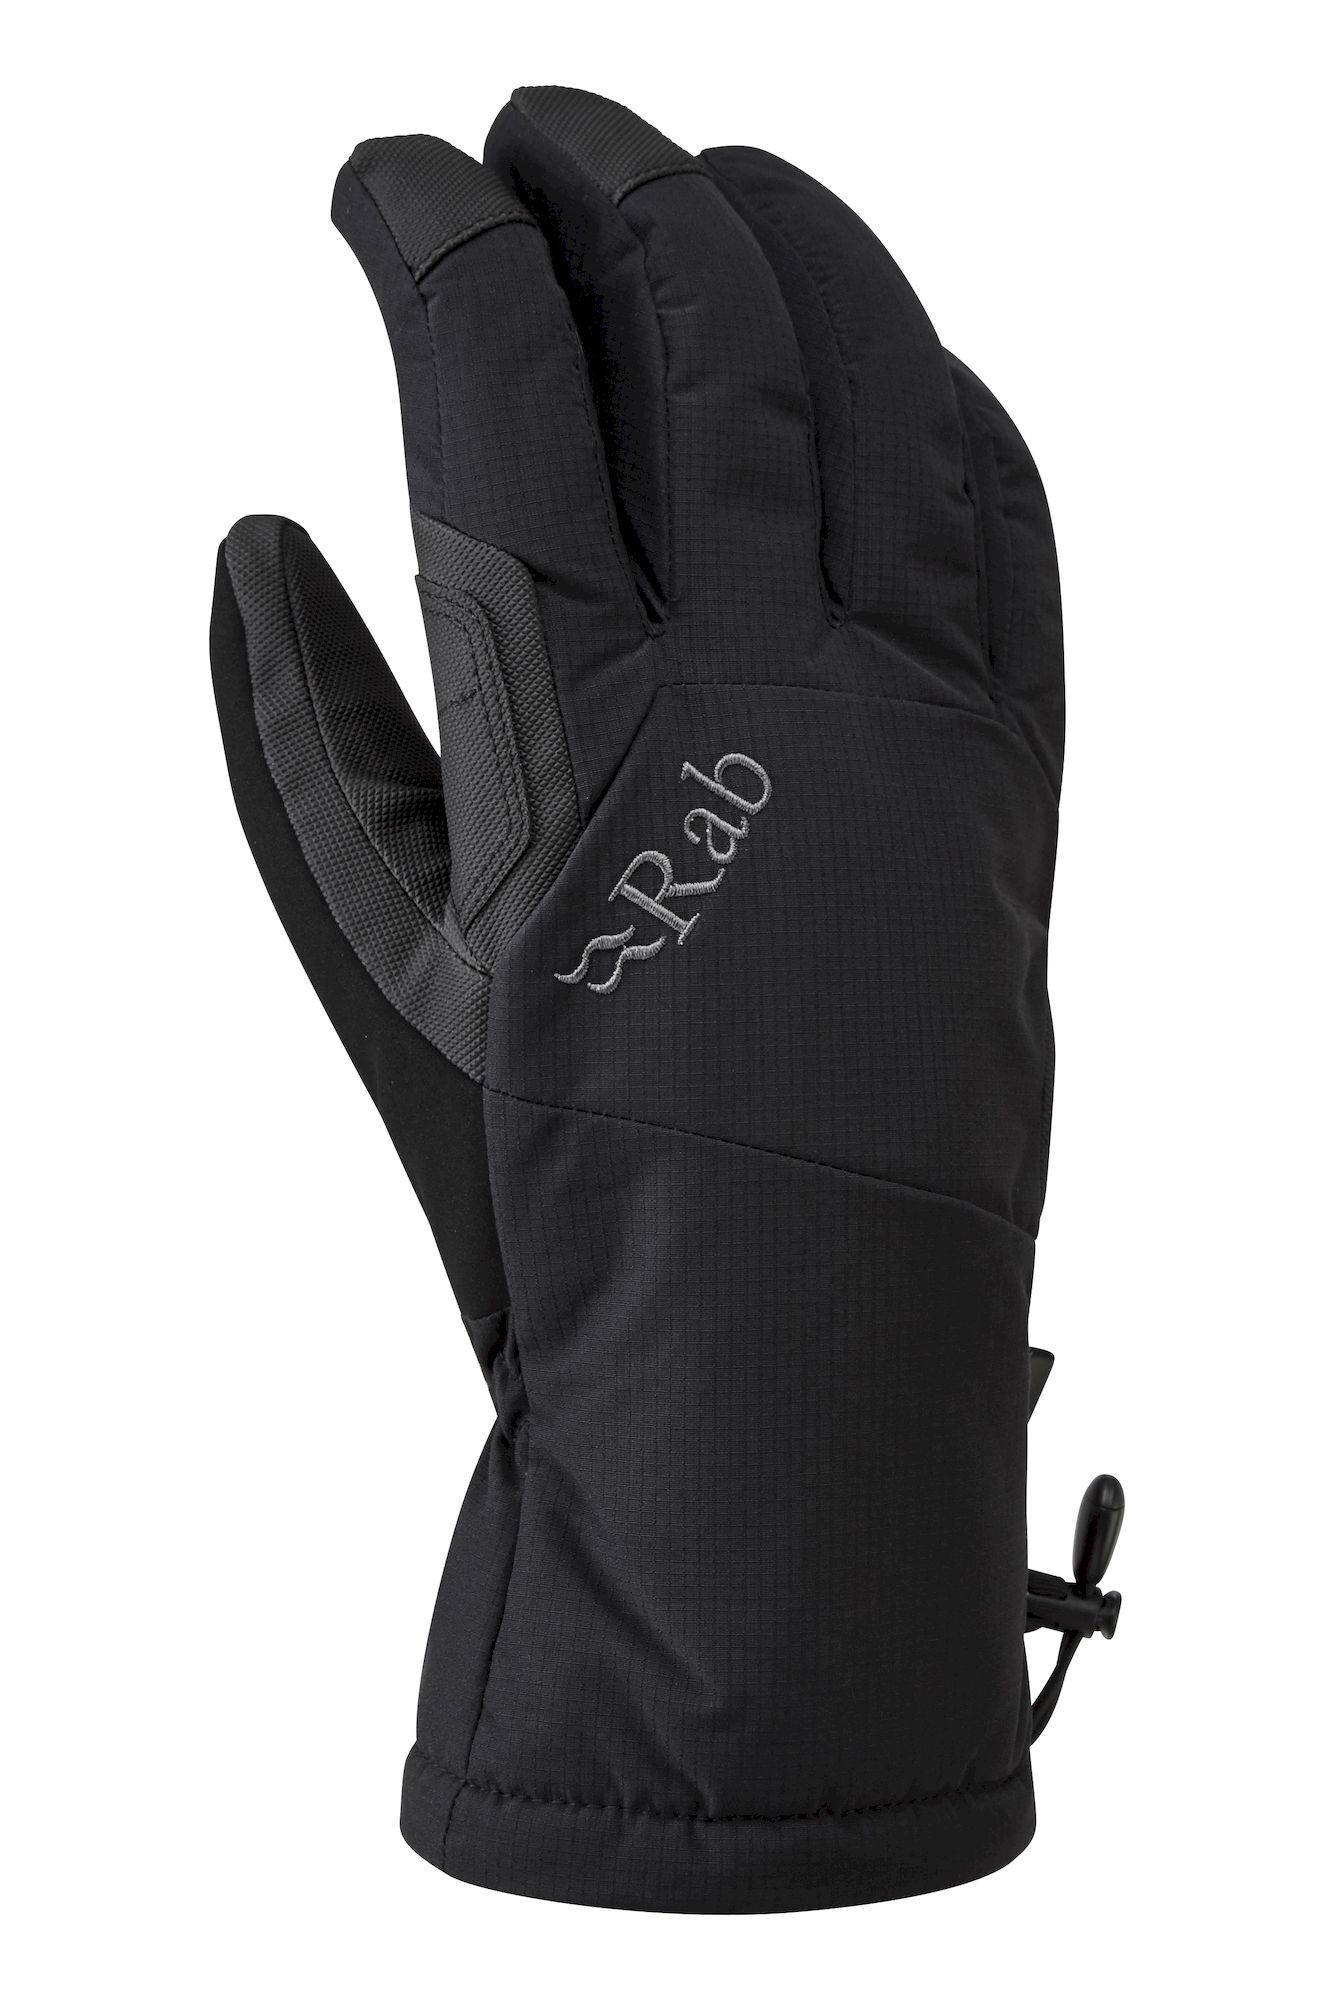 Rab Storm Gloves - Guantes de esquí - Hombre | Hardloop